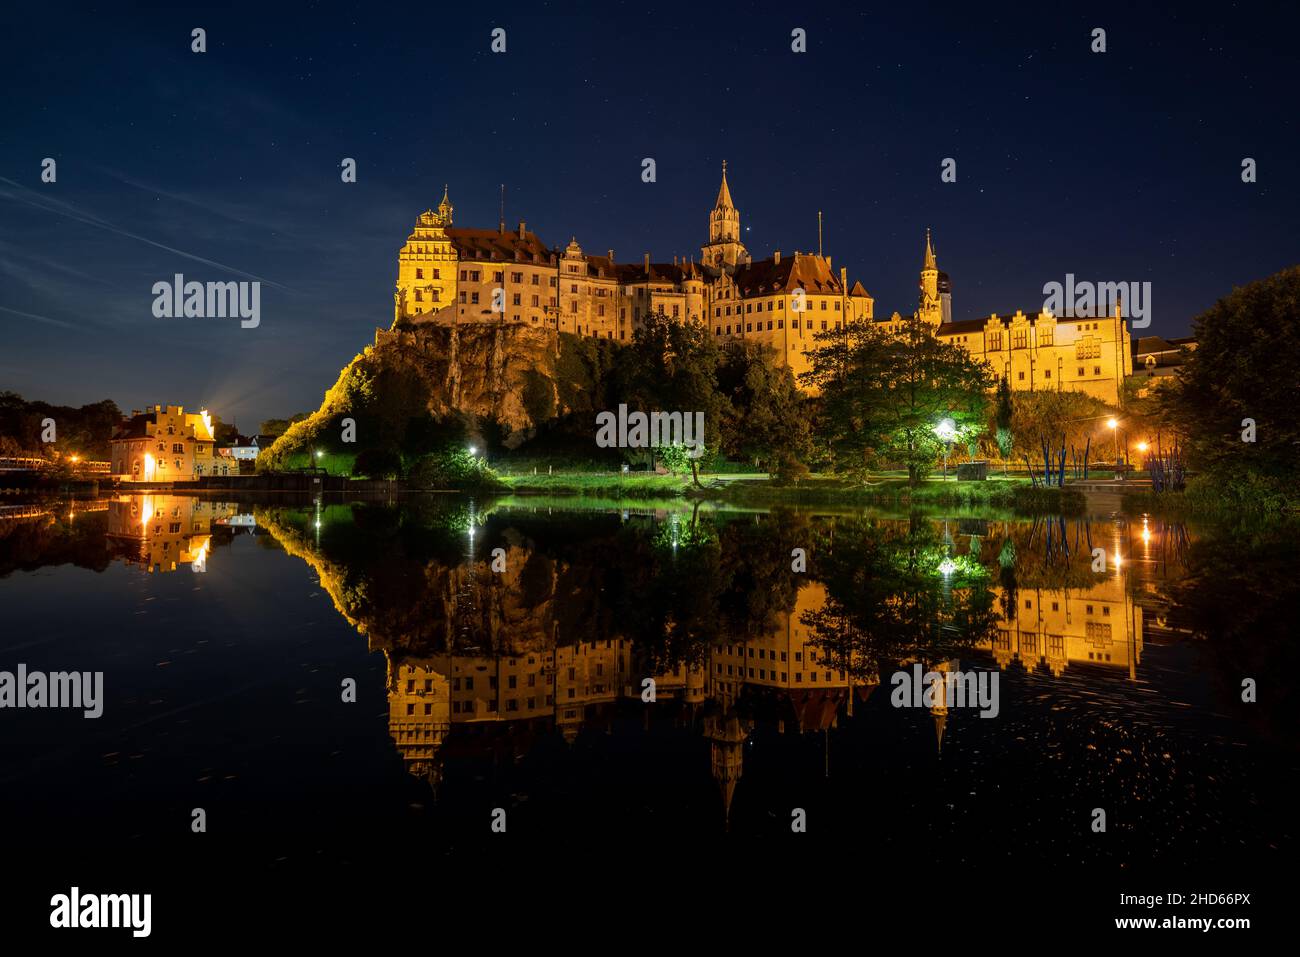 Le château de Hohenzollern à Sigmaringen, en Allemagne, se reflète dans l'eau du Danube la nuit Banque D'Images